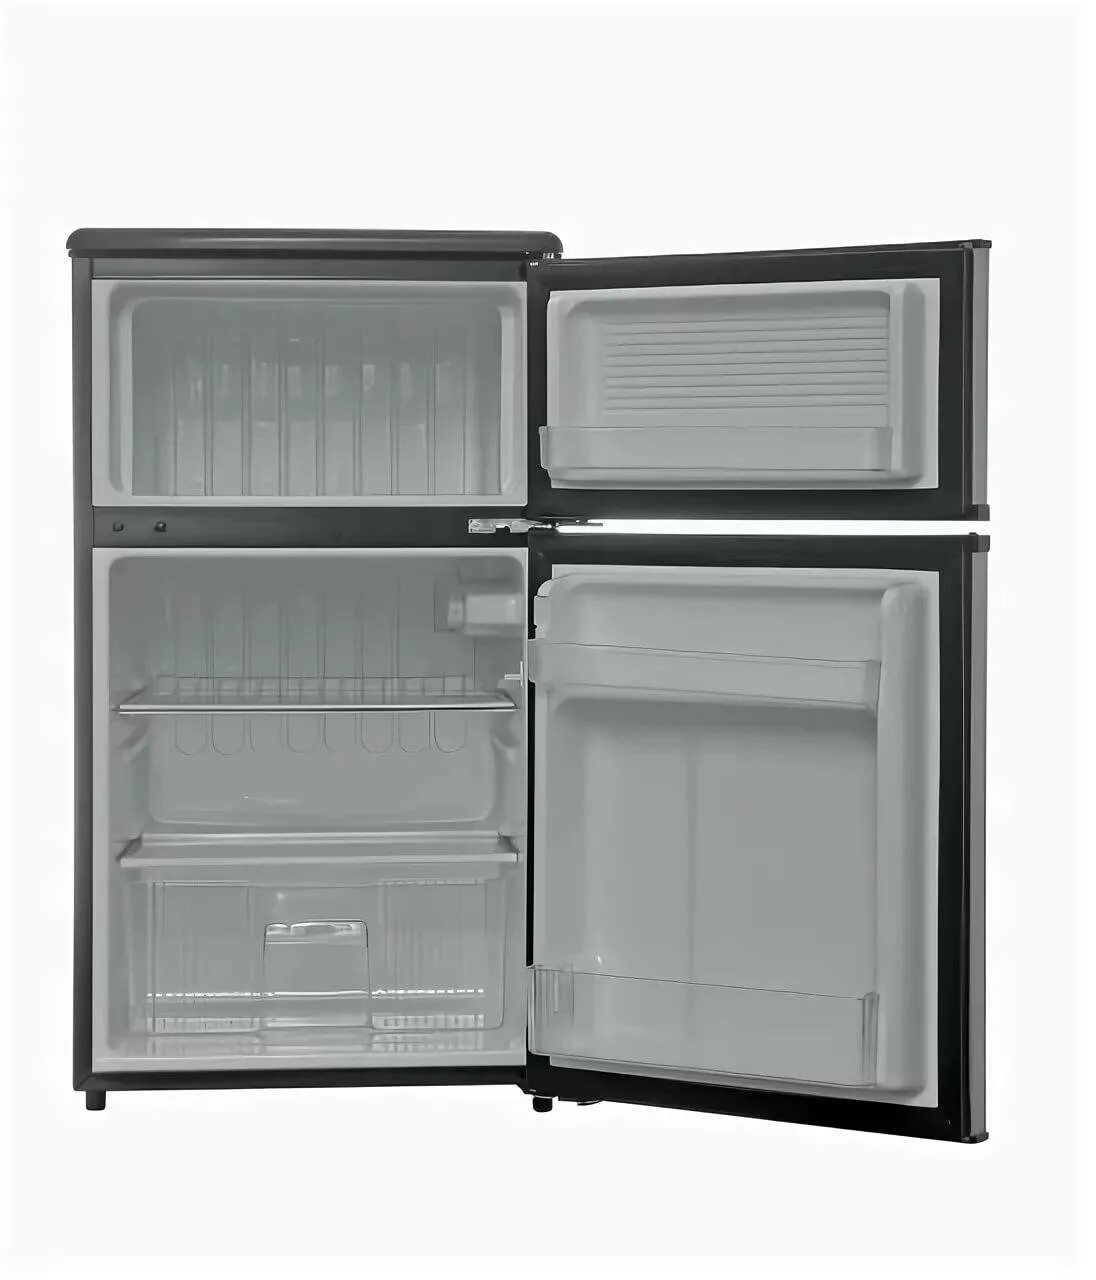 Холодильник 120 60 60. Холодильник Shivaki SHRF-90dp. Холодильник Shivaki Mini 85-90см. Холодильник шваки модель Surf 90dp. Холодильник мини-бар Shivaki SHRF-55chs.